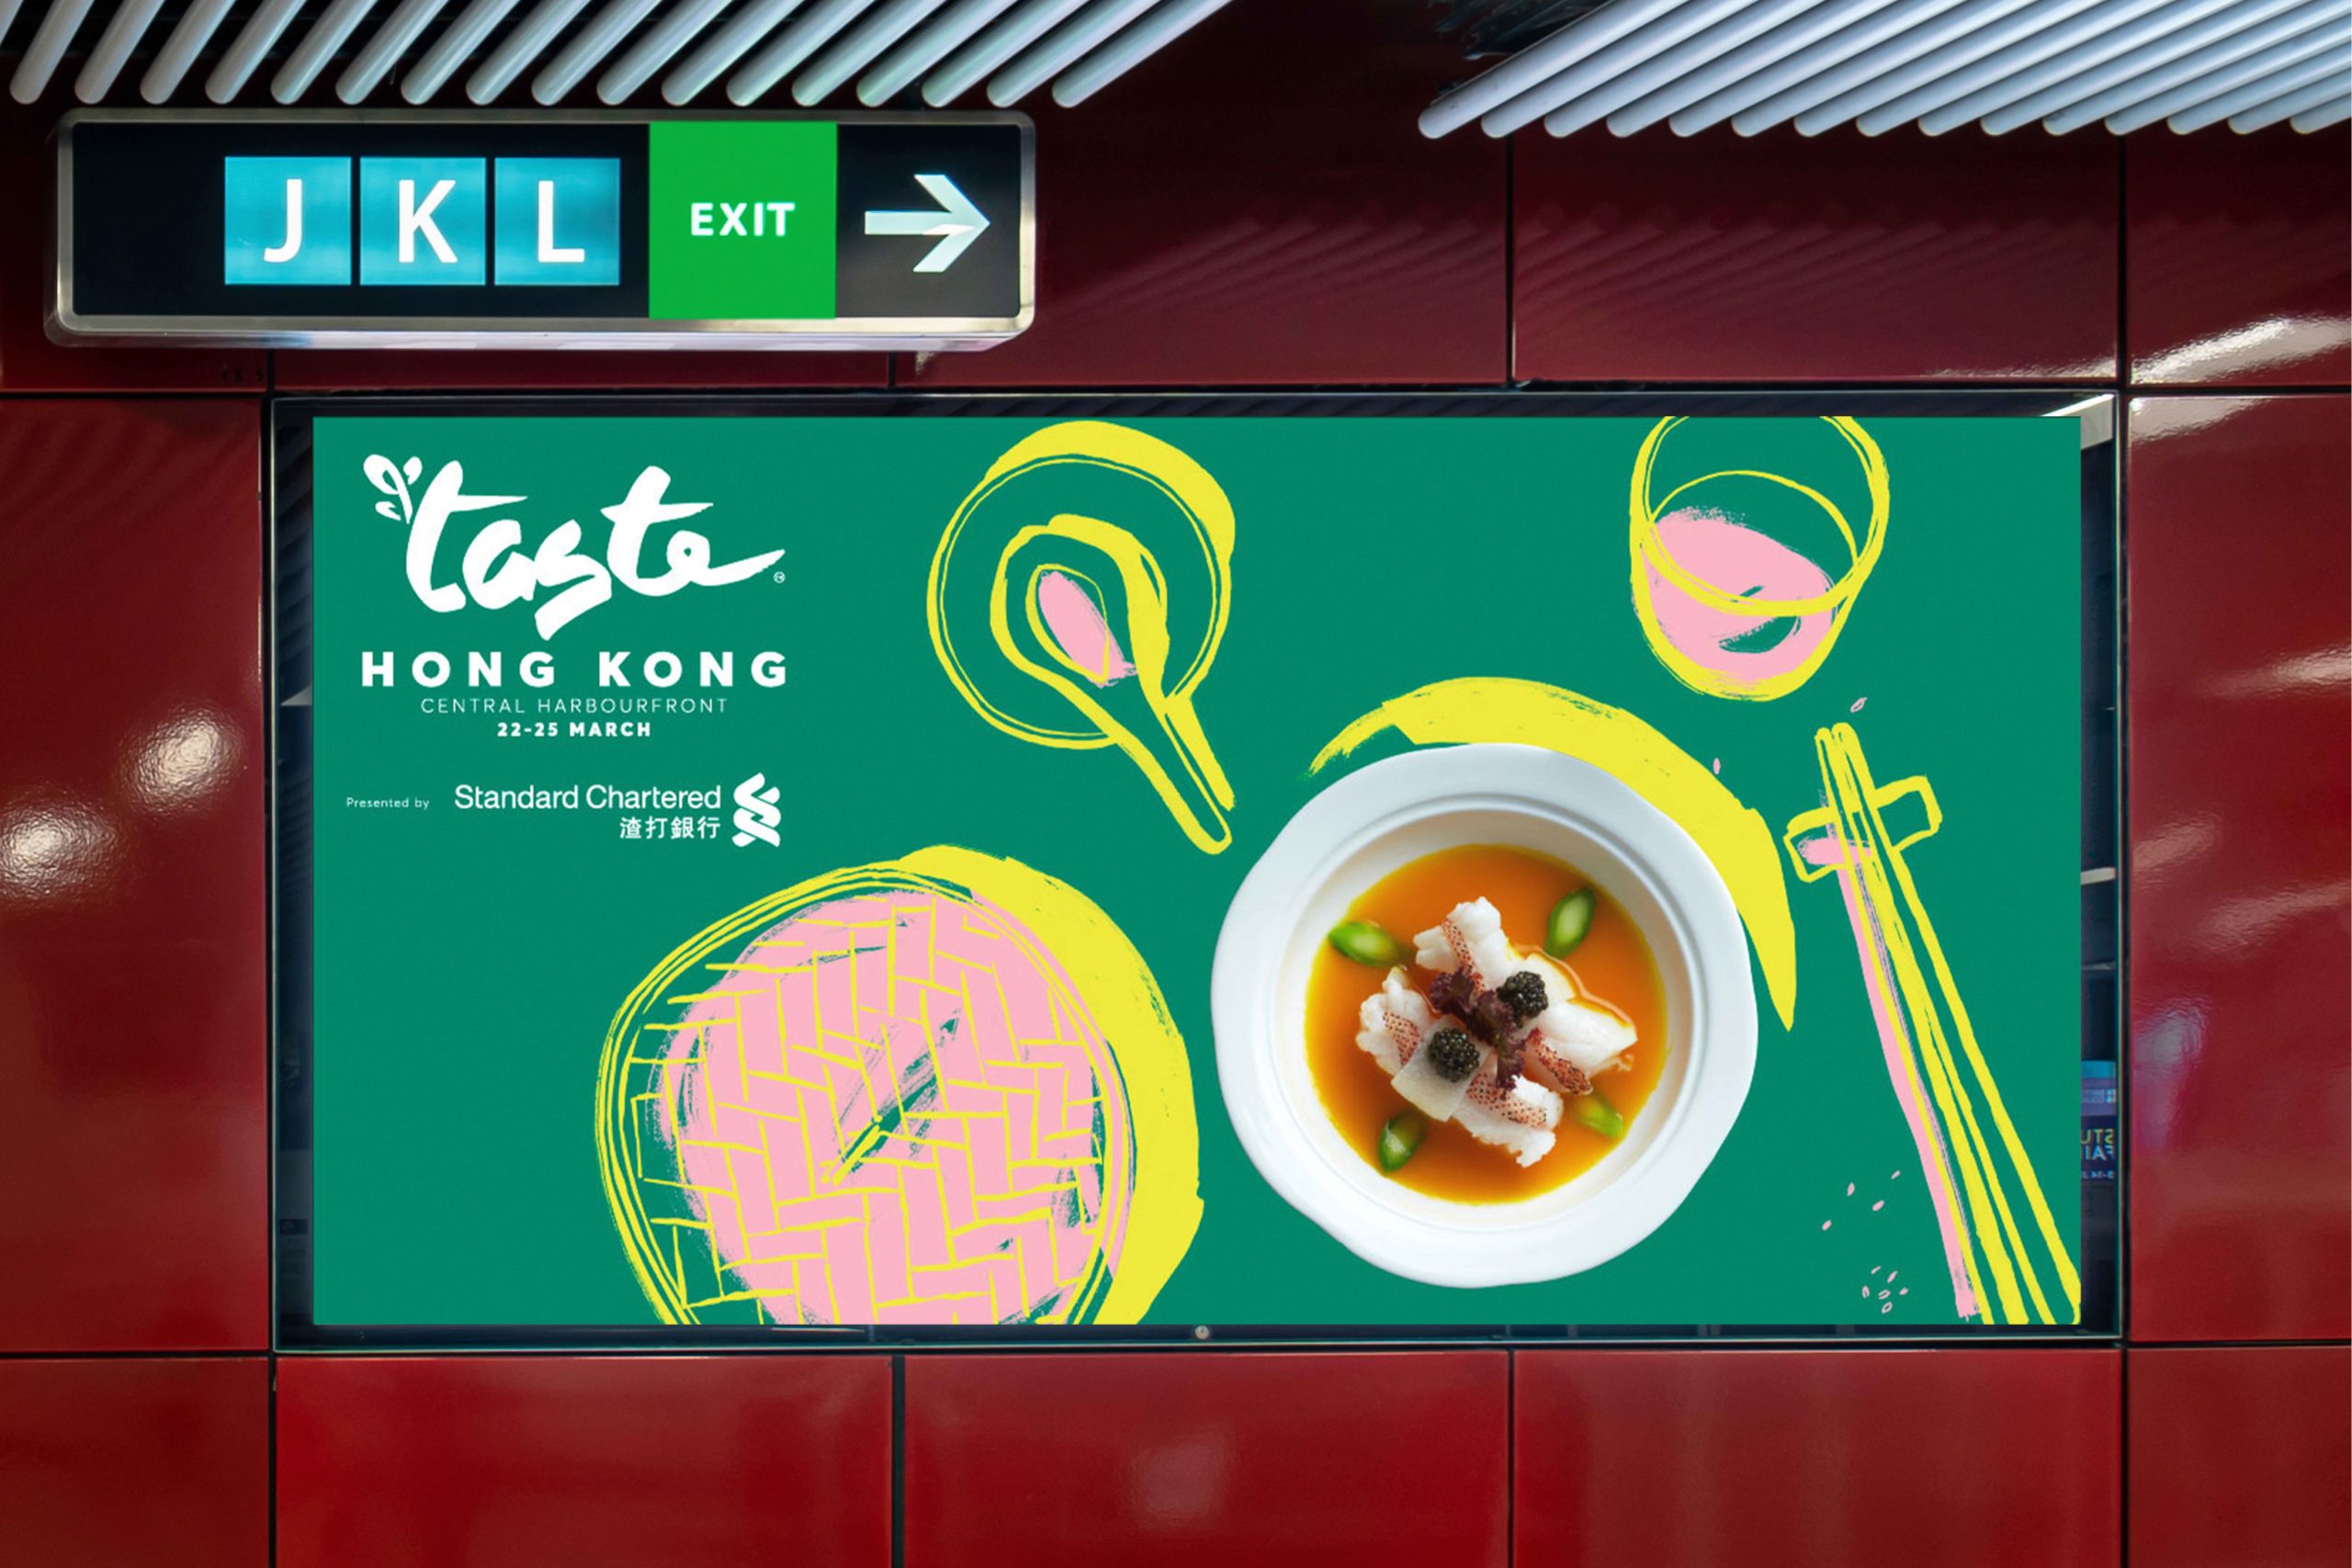 Taste of Hong Kong landscape advertisement in MTR station